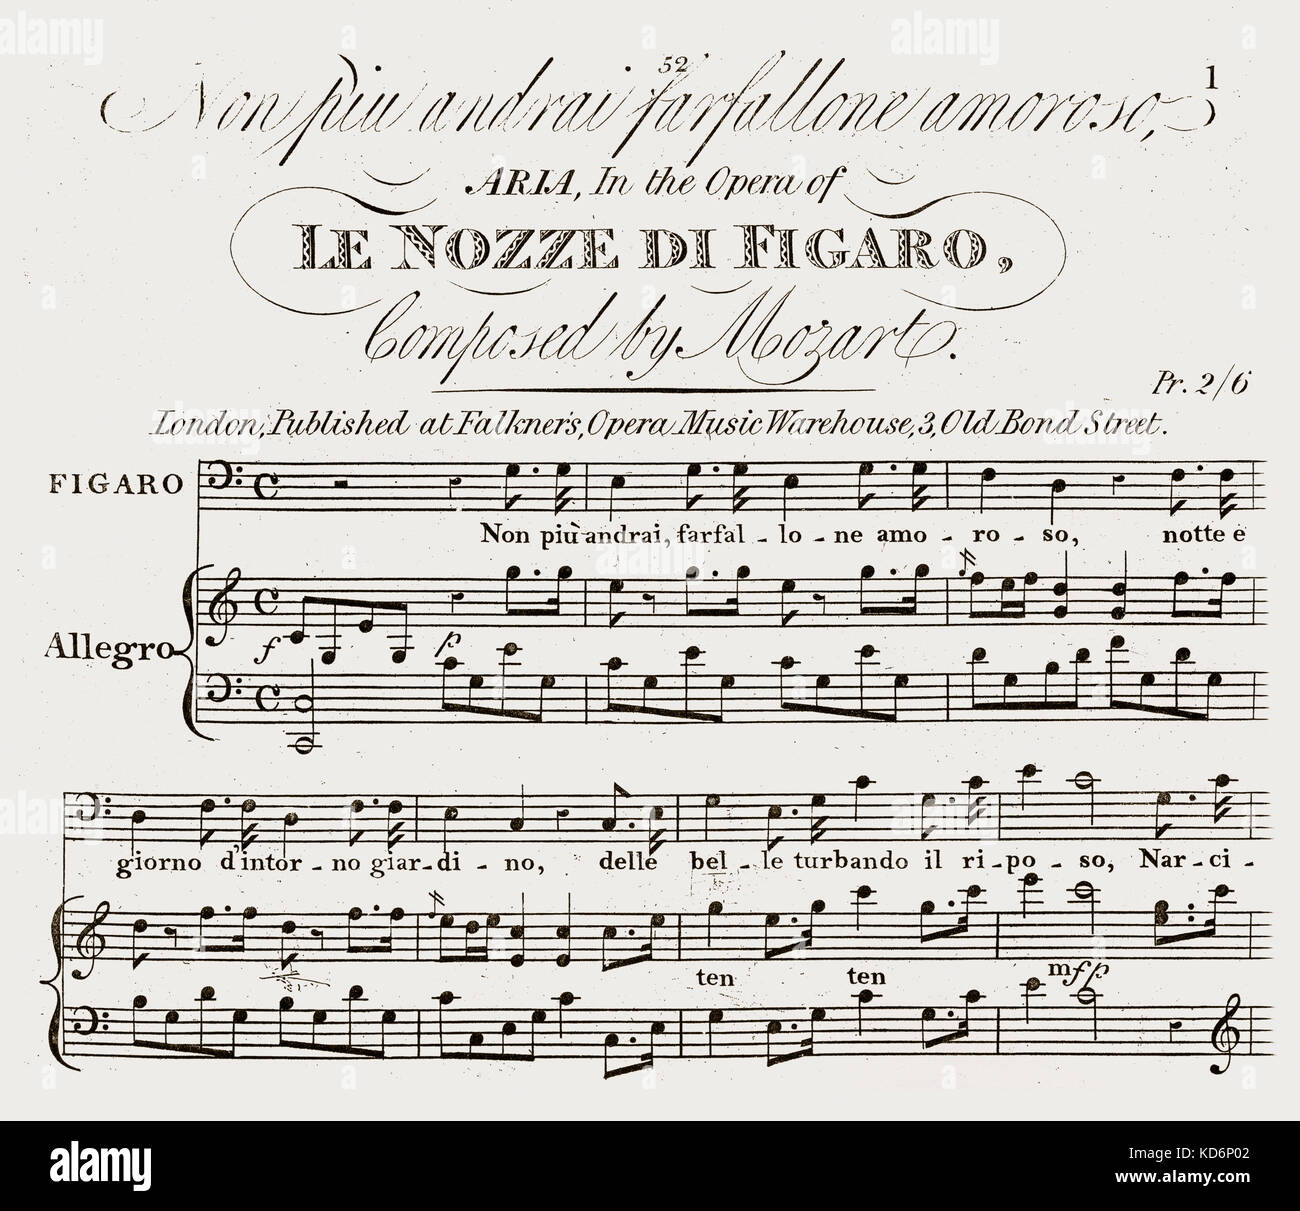 Wolfgang Amadeus Mozart 's Le Nozze di Figaro (Le Nozze di Figaro) - Aria  iniziano con 'Non piu andrai, farfallone amoroso'. Opera libretto, xix  secolo. Pubblicato da Birchall, Londra, 1824. Il compositore